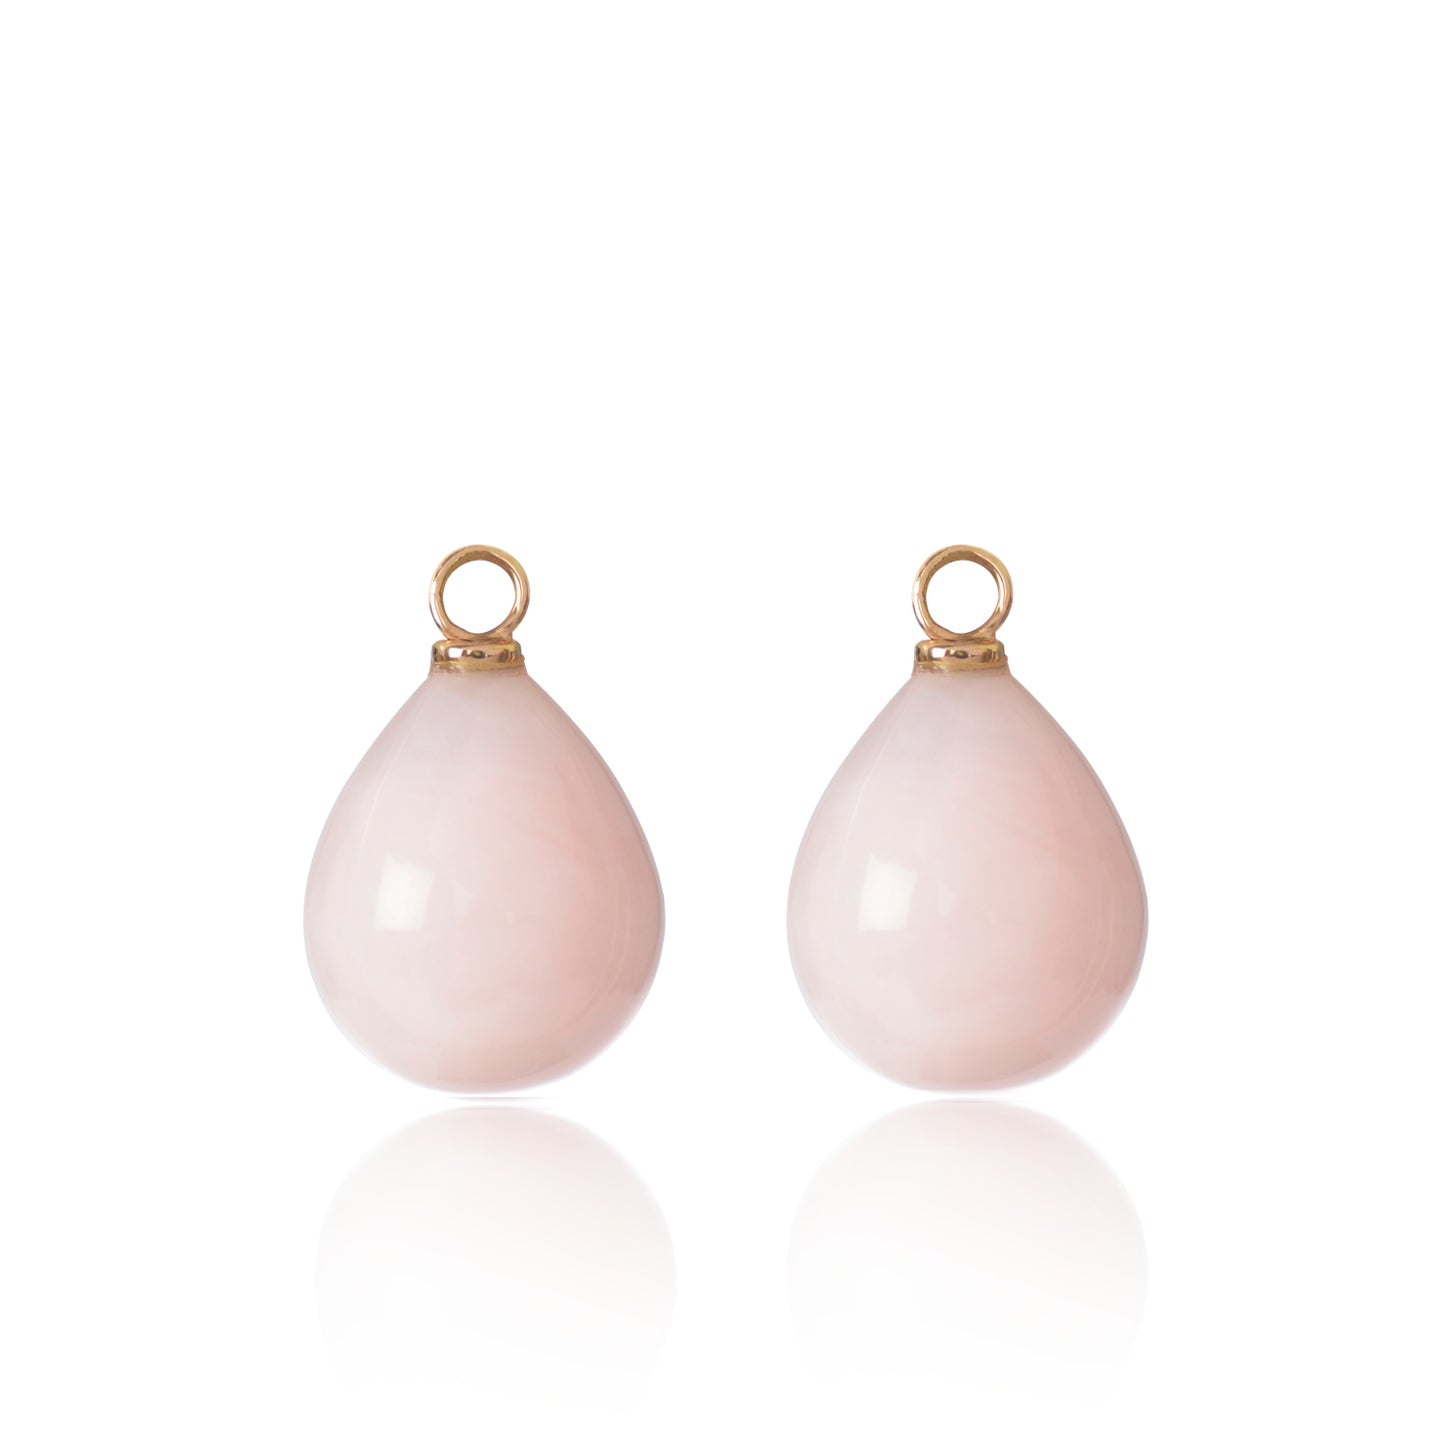 Pink Peruvian Opal Earring Pendants by McFarlane Fine Jewellery